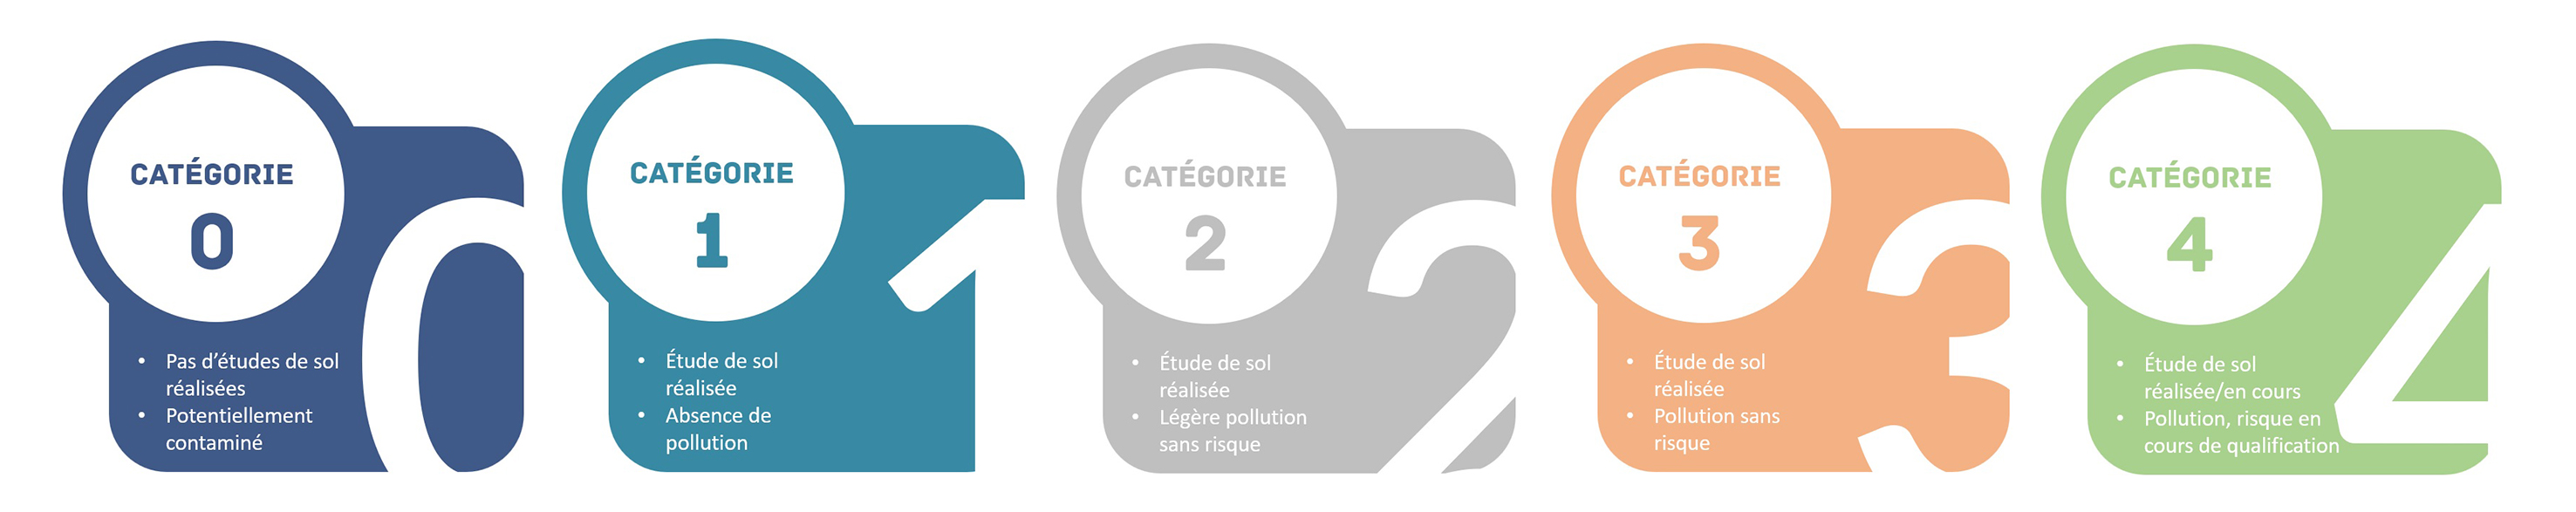 Illustration des 5 catégories de pollution à Bruxelles